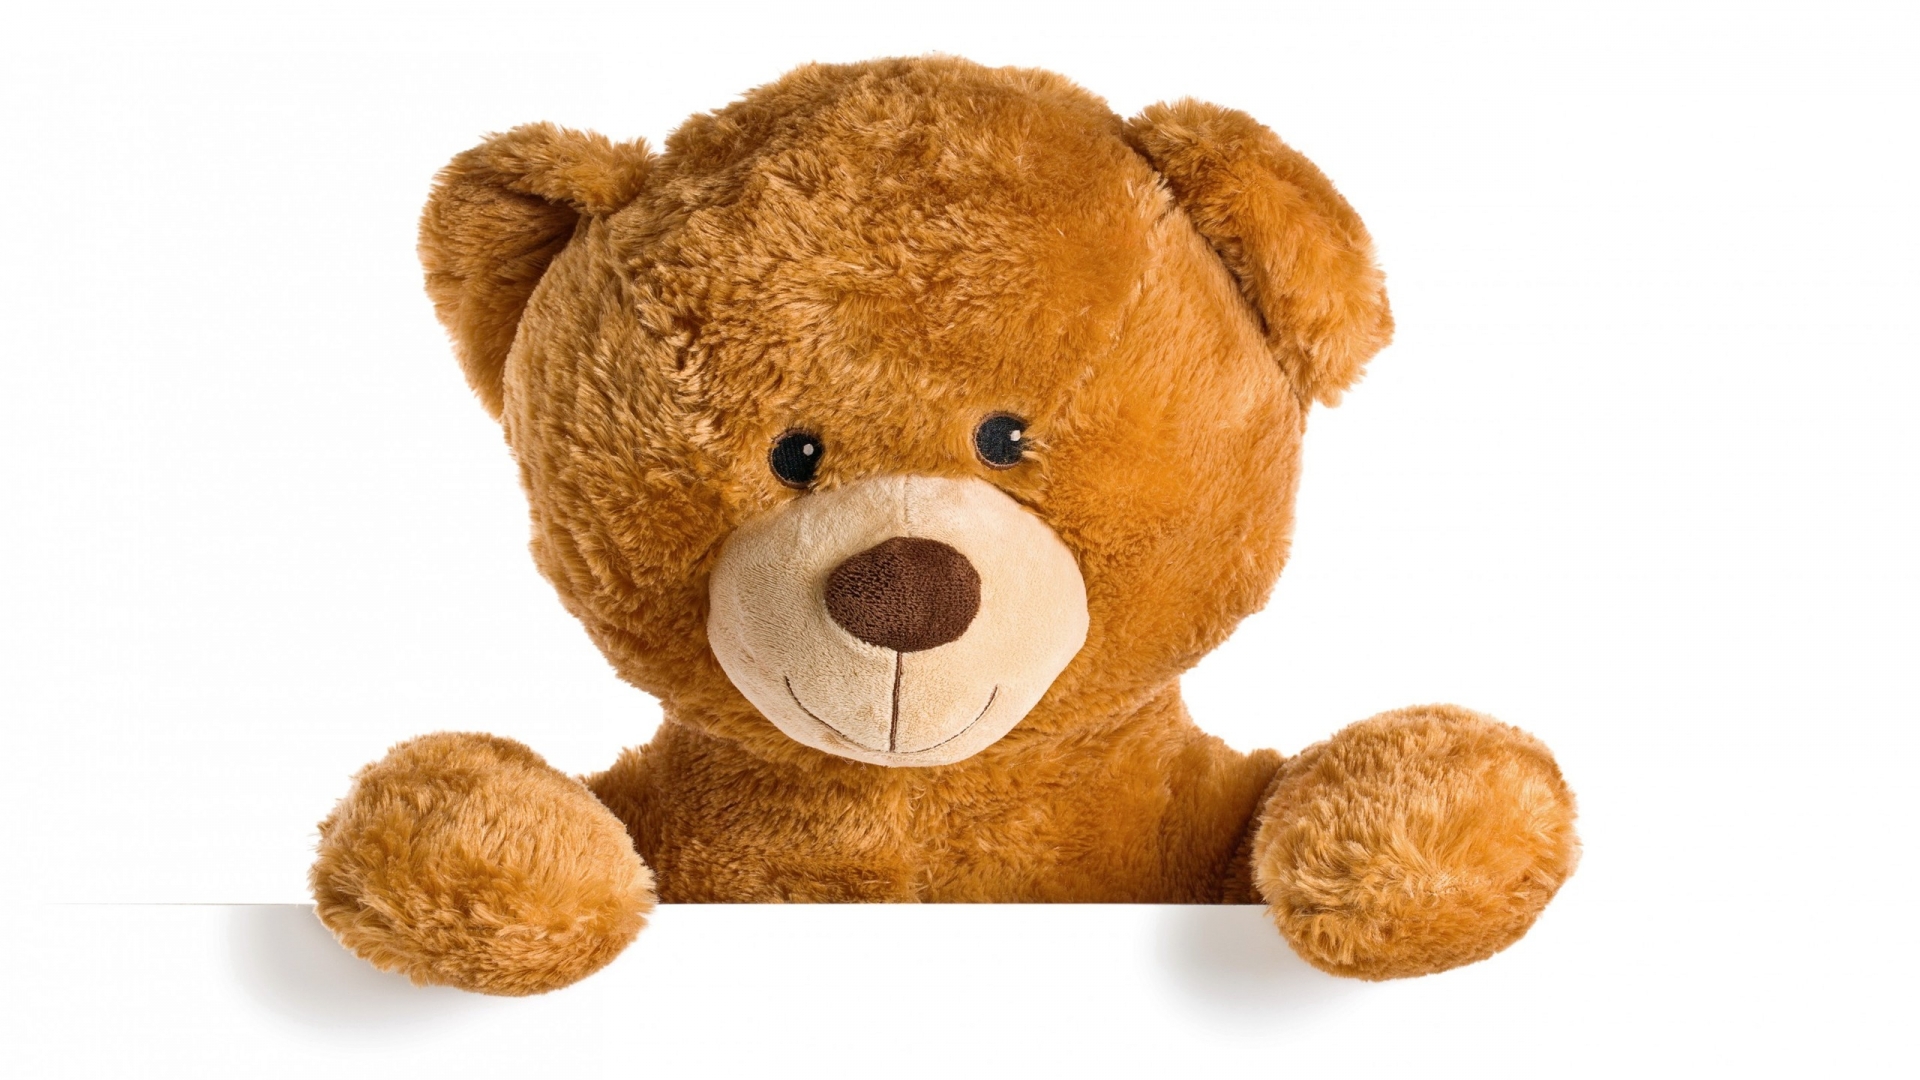 Cute Teddy Bear for 1920 x 1080 HDTV 1080p resolution